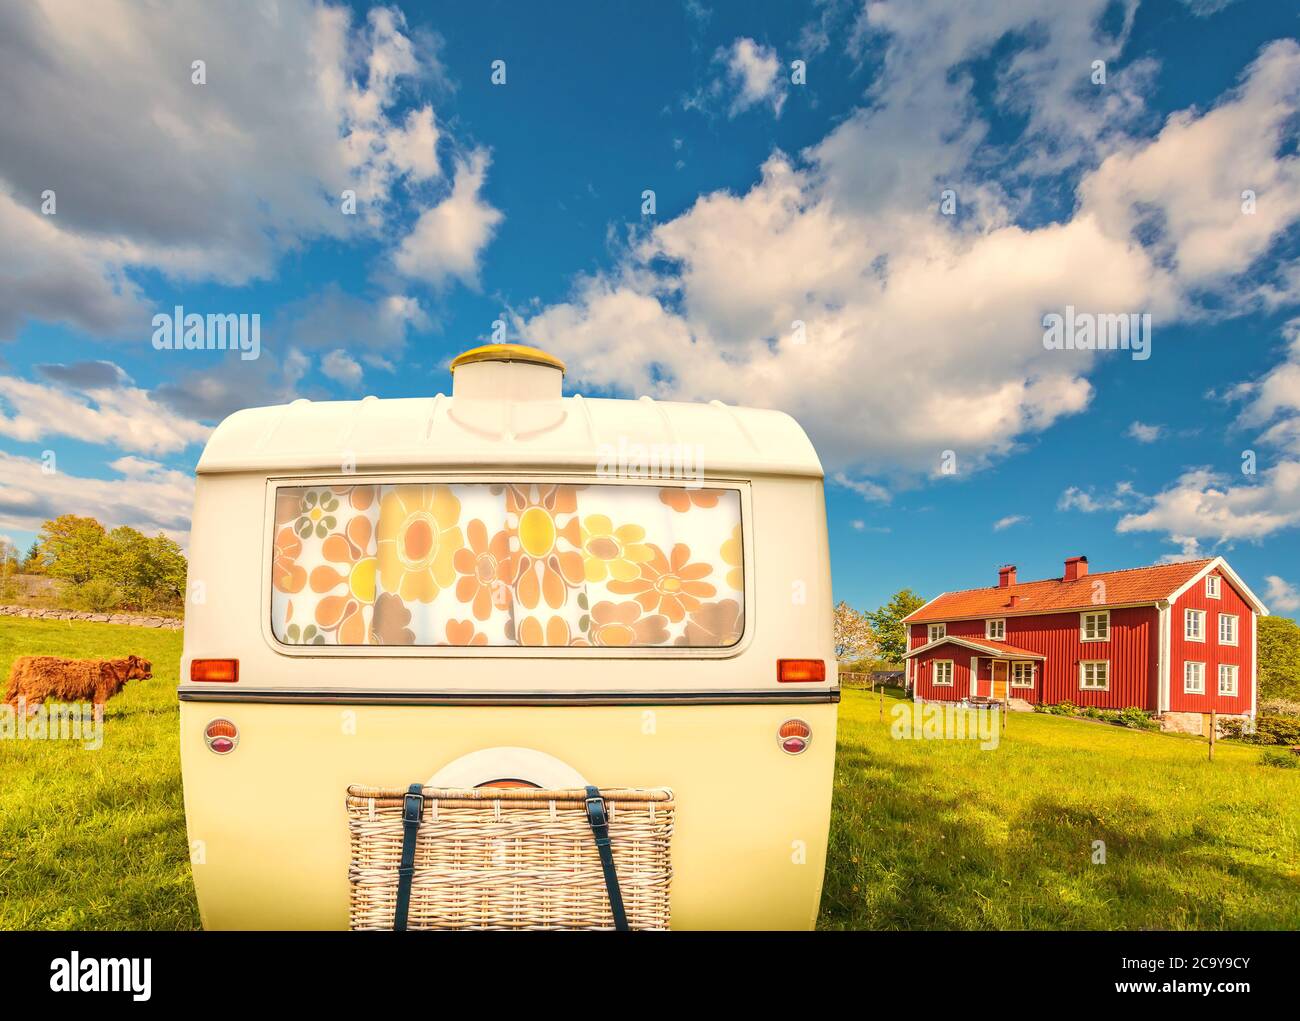 Retro vintage di una carovana in due tonalità di colore giallo e bianco di fronte ad una tipica casa colonica in legno a Smaland, Svezia Foto Stock